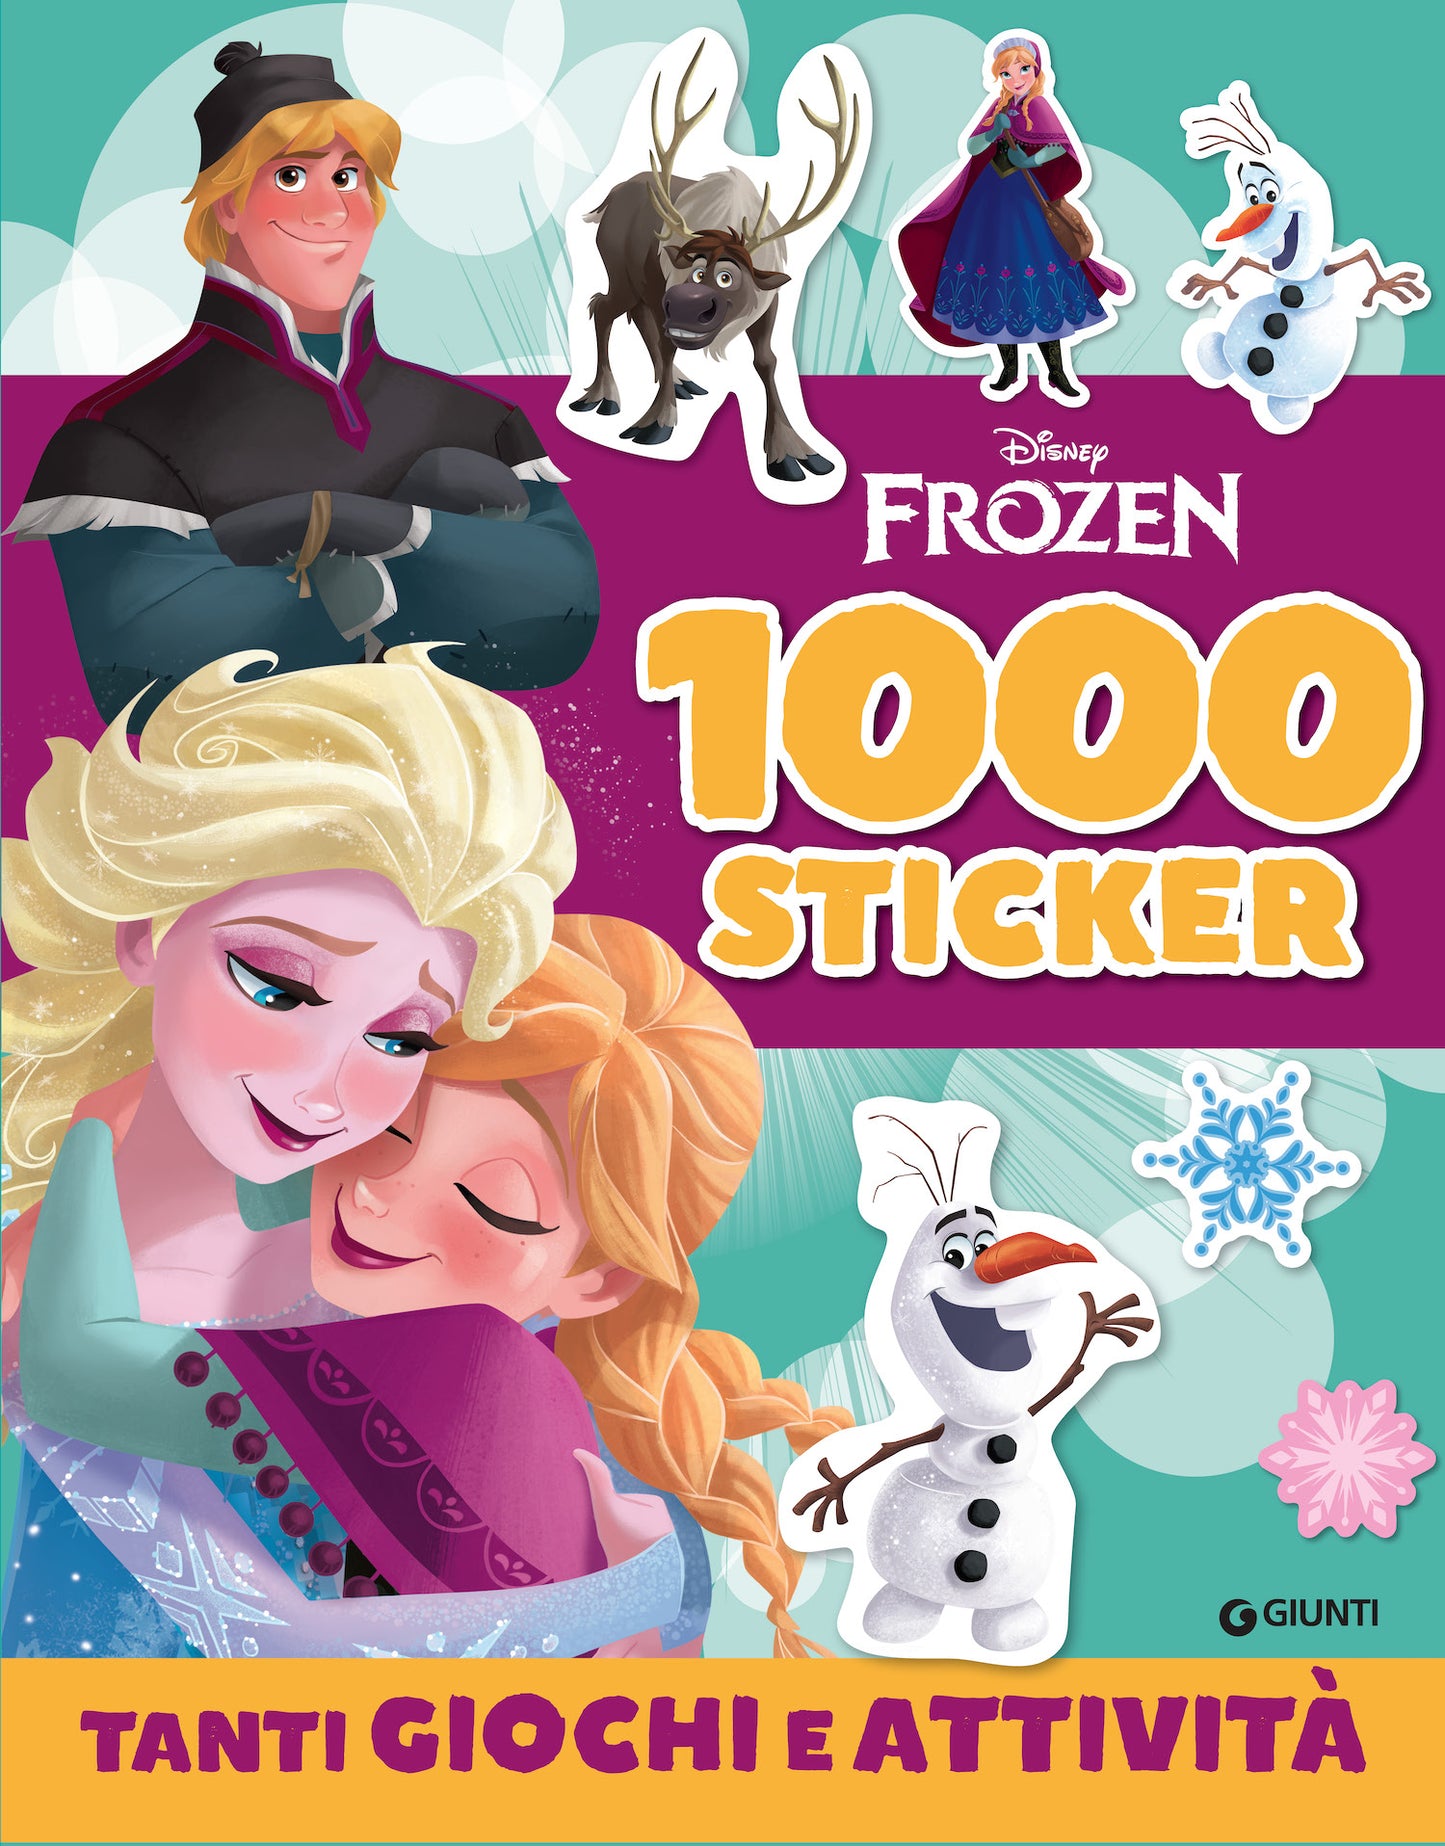 Frozen 1000 sticker. Tanti giochi e attività